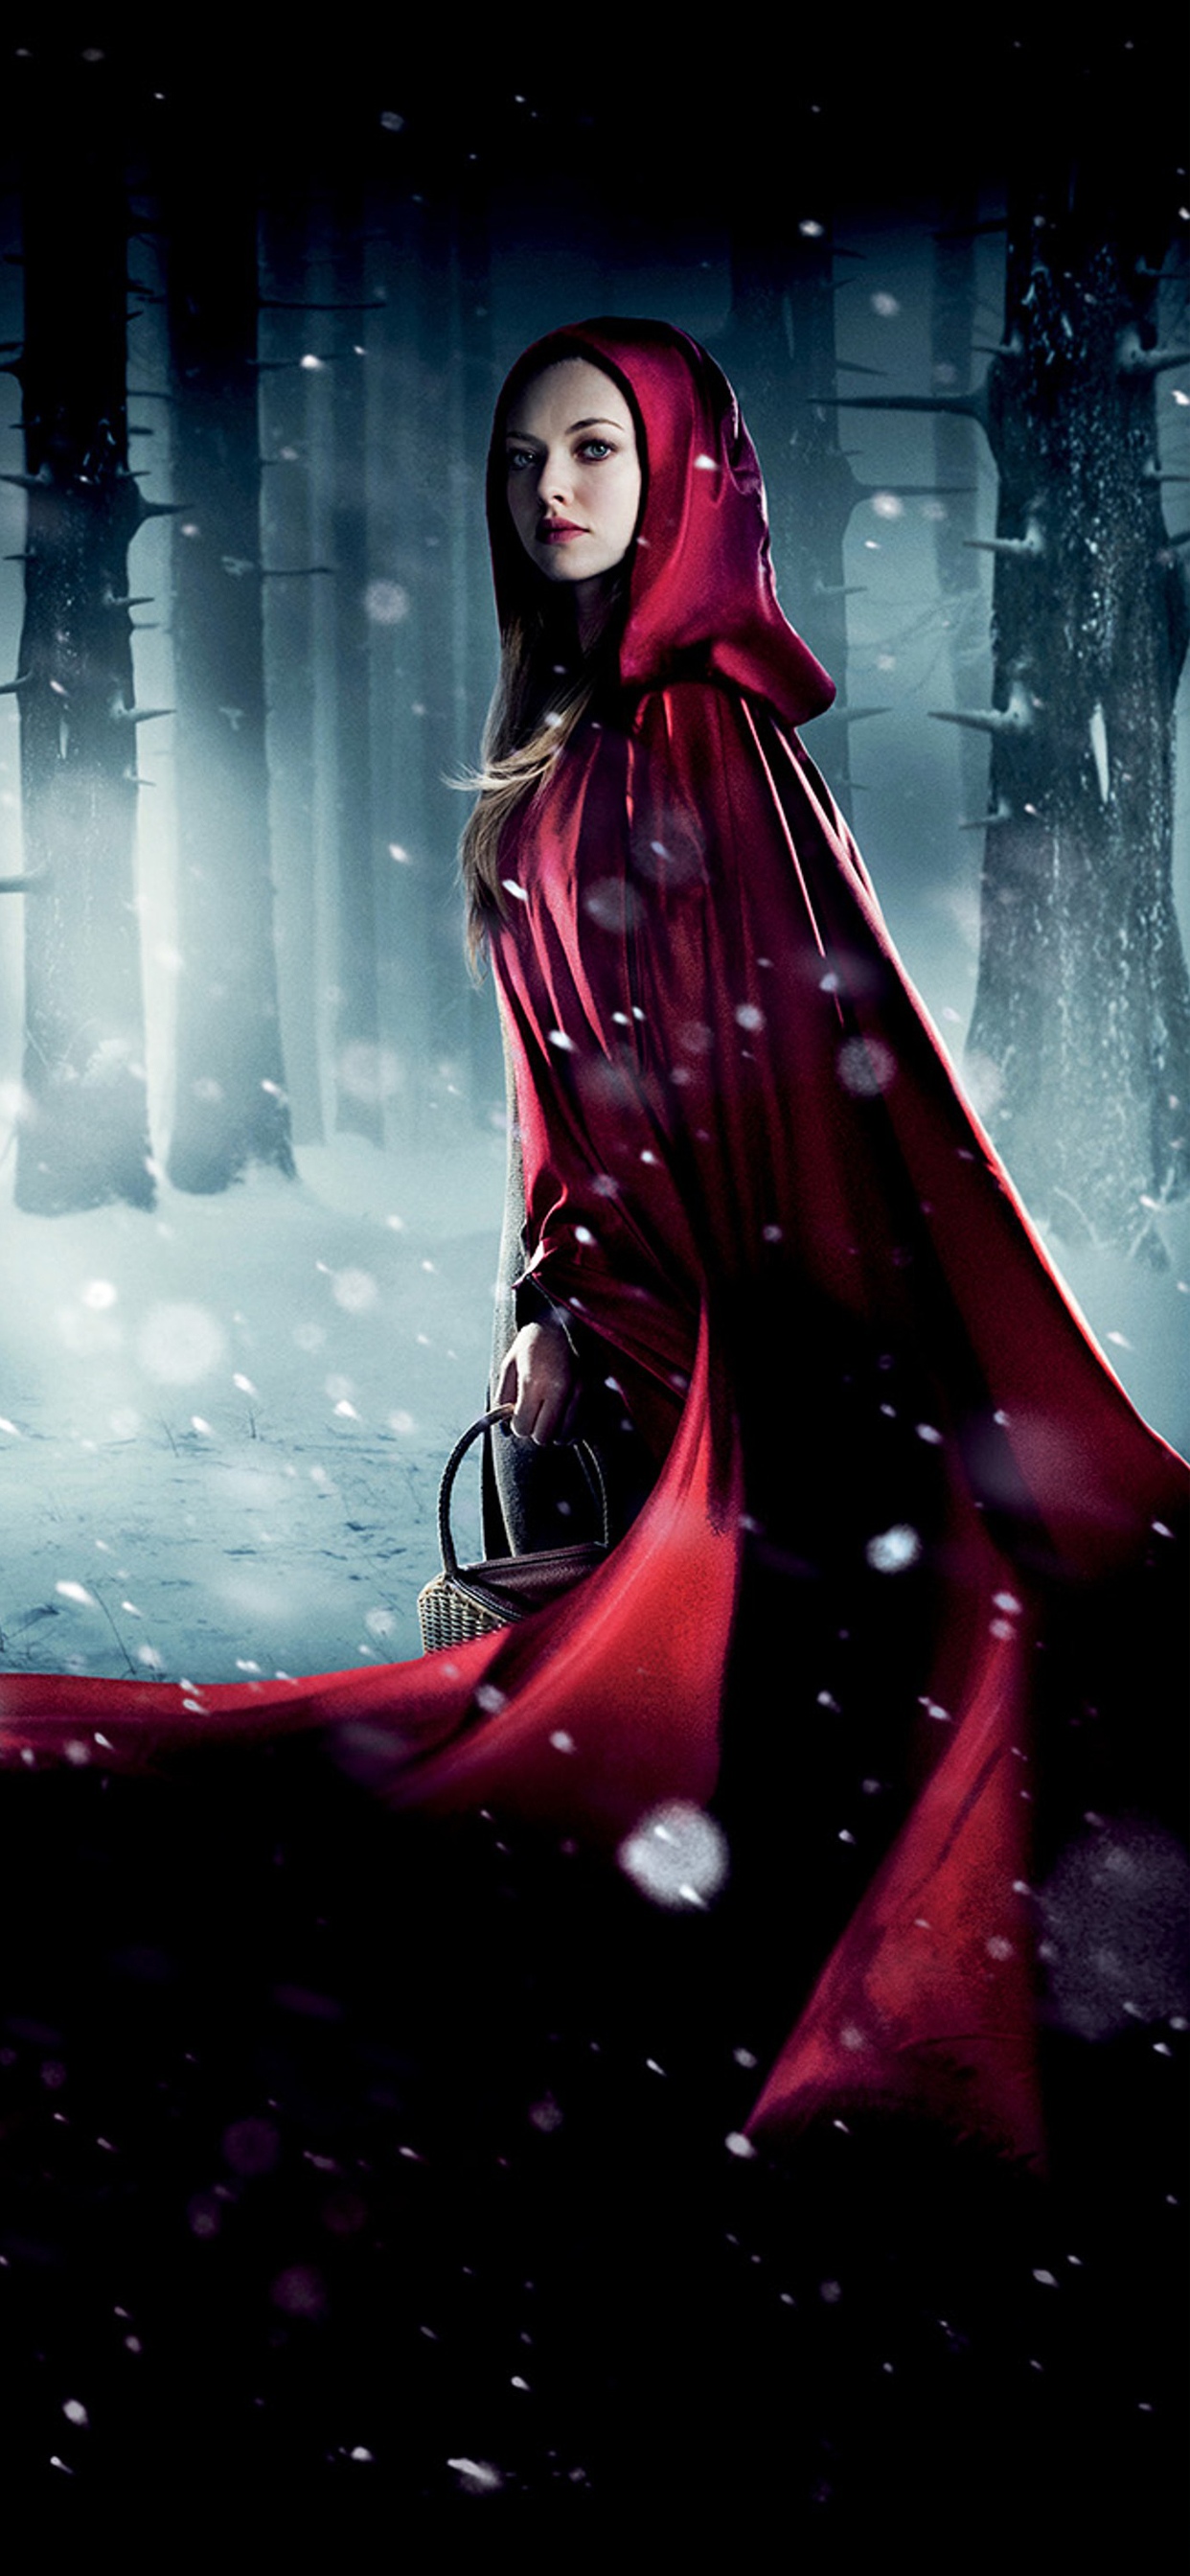 小红帽 Red Riding Hood(2011)